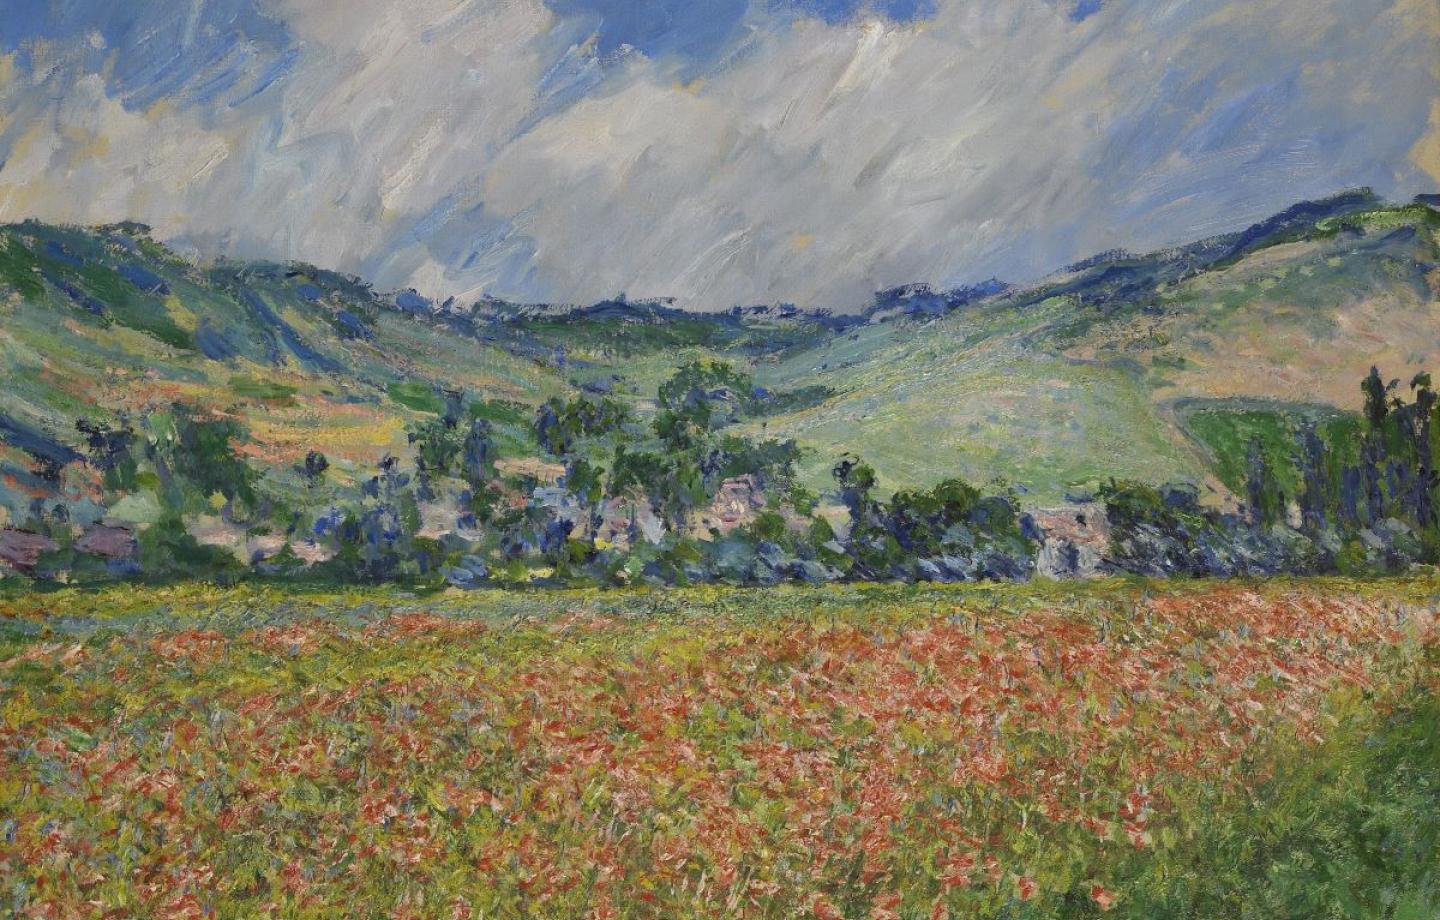   © Claude Monet, Champ de coquelicots, environ de Giverny, 1885, Huile sur toile, Musée des Beaux-Arts de Rouen